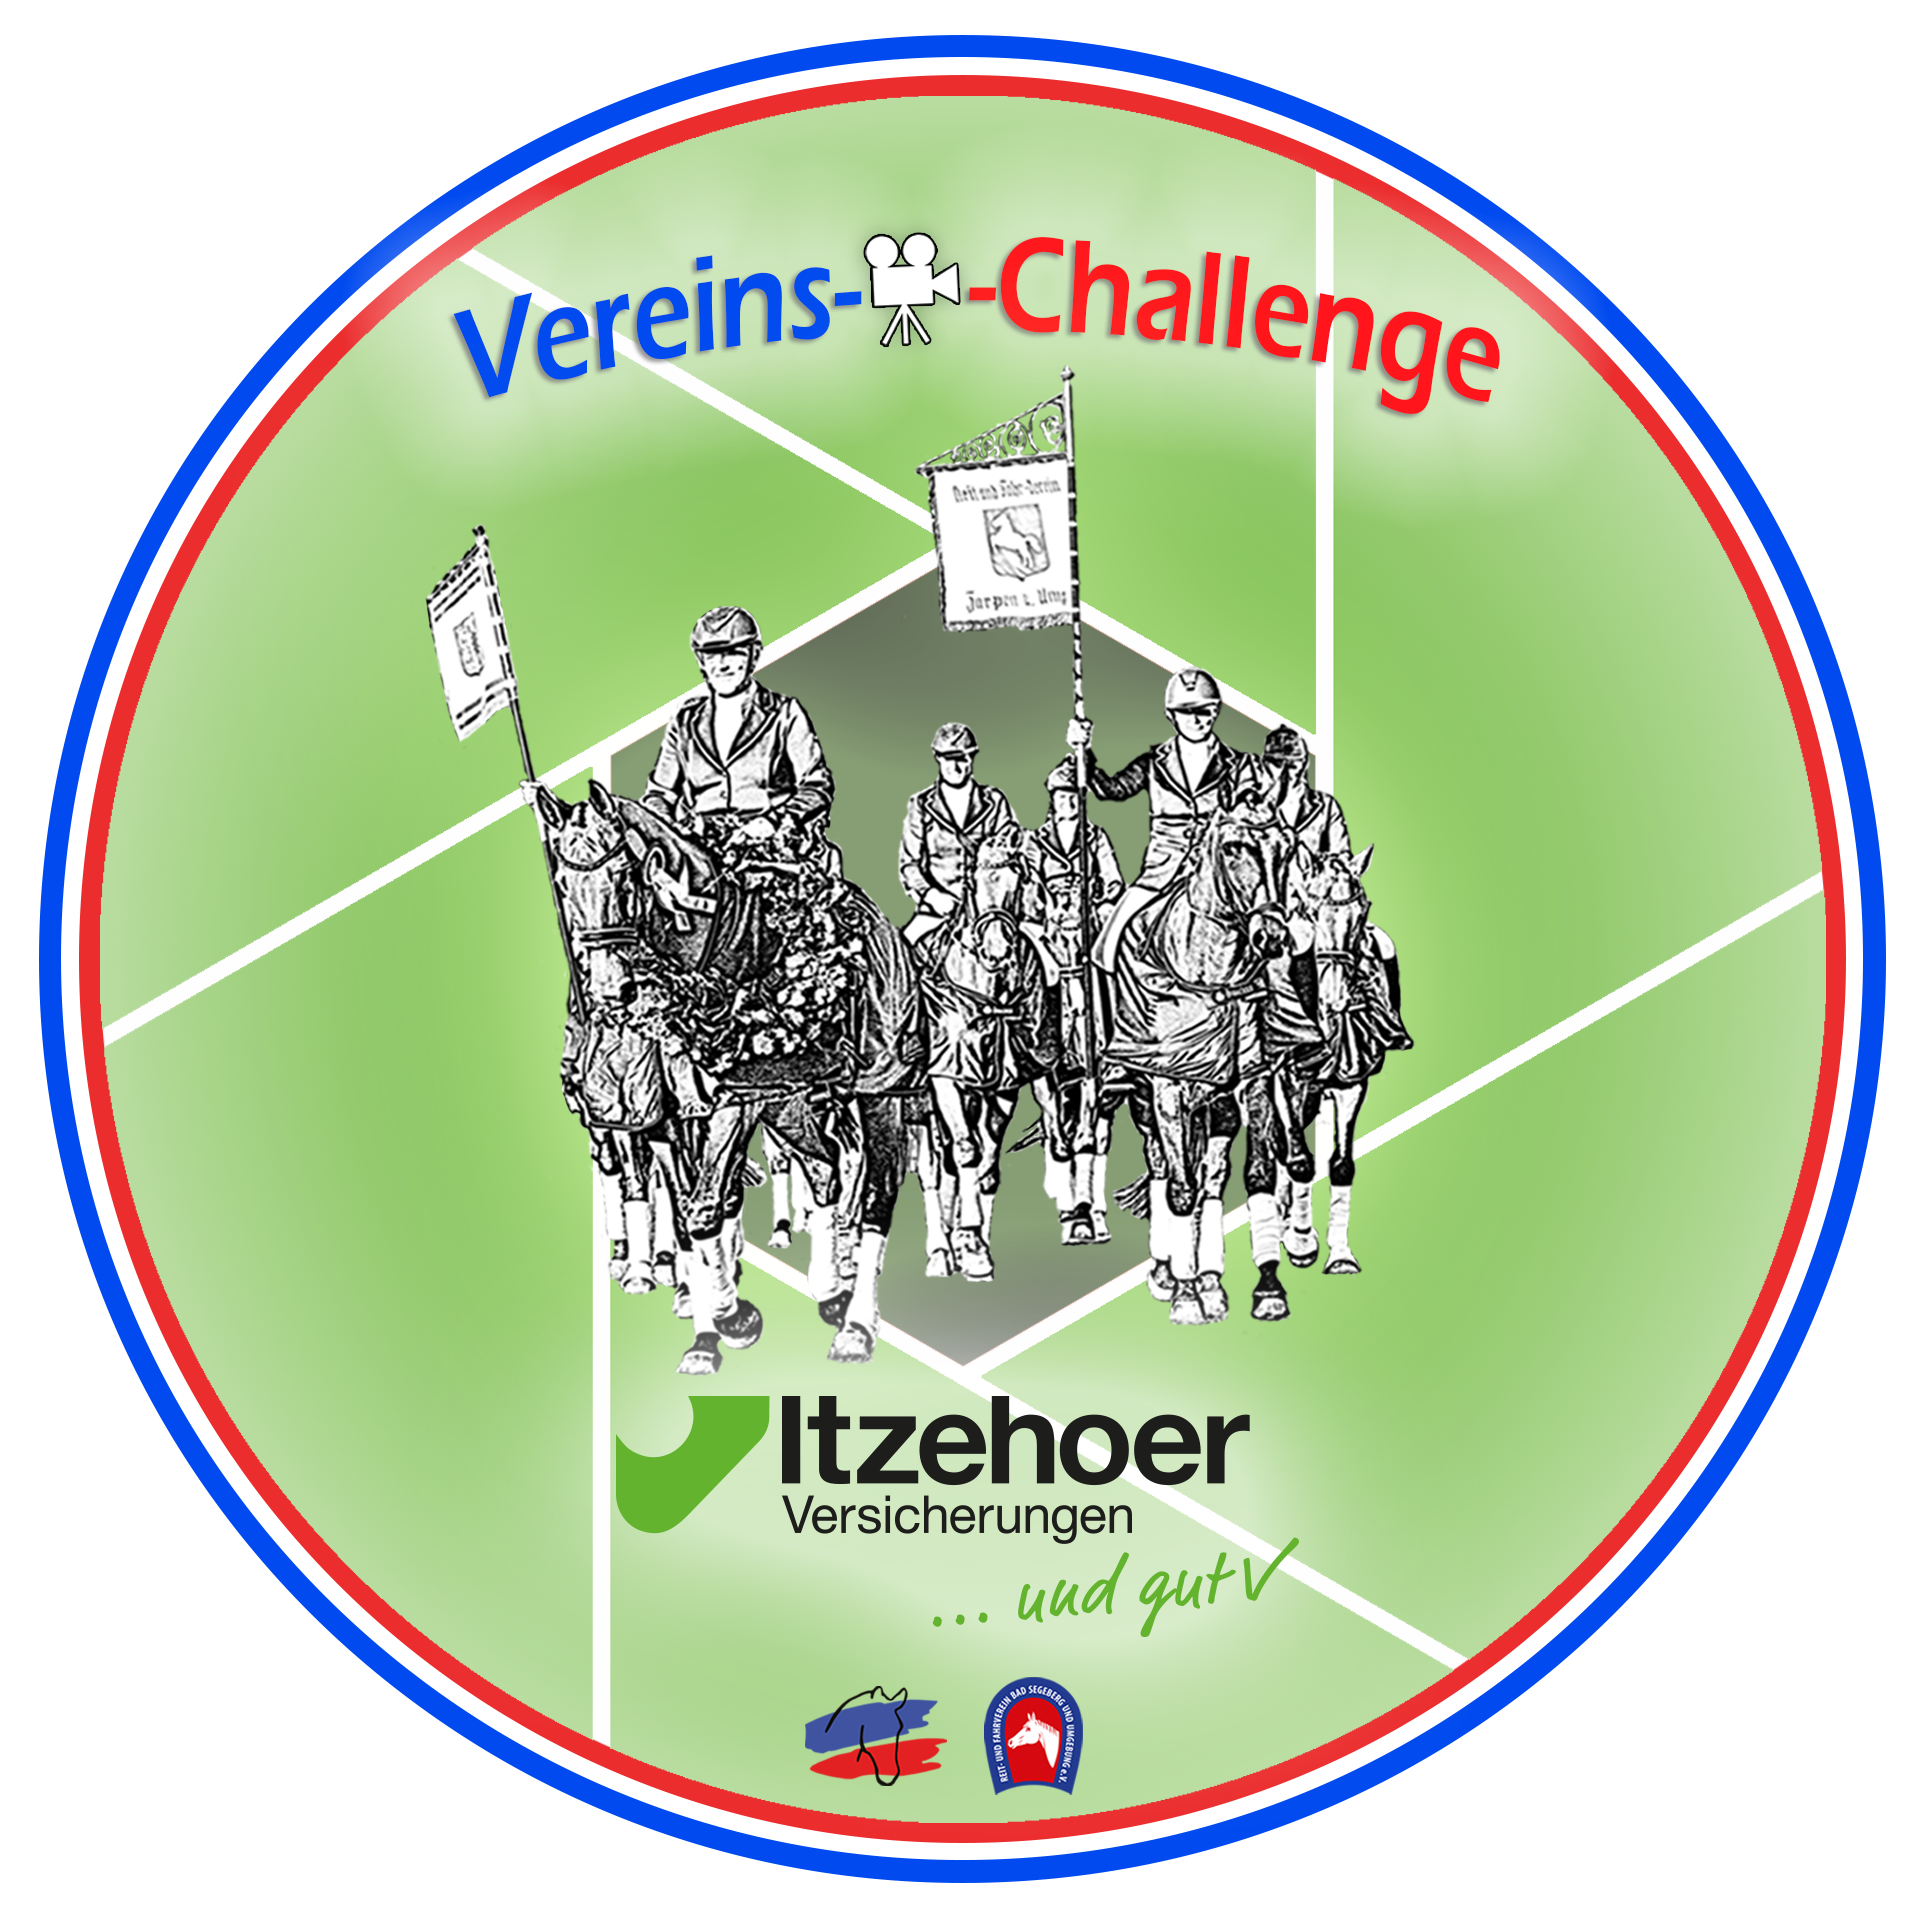 (c) Itzehoer-vereins-challenge.de